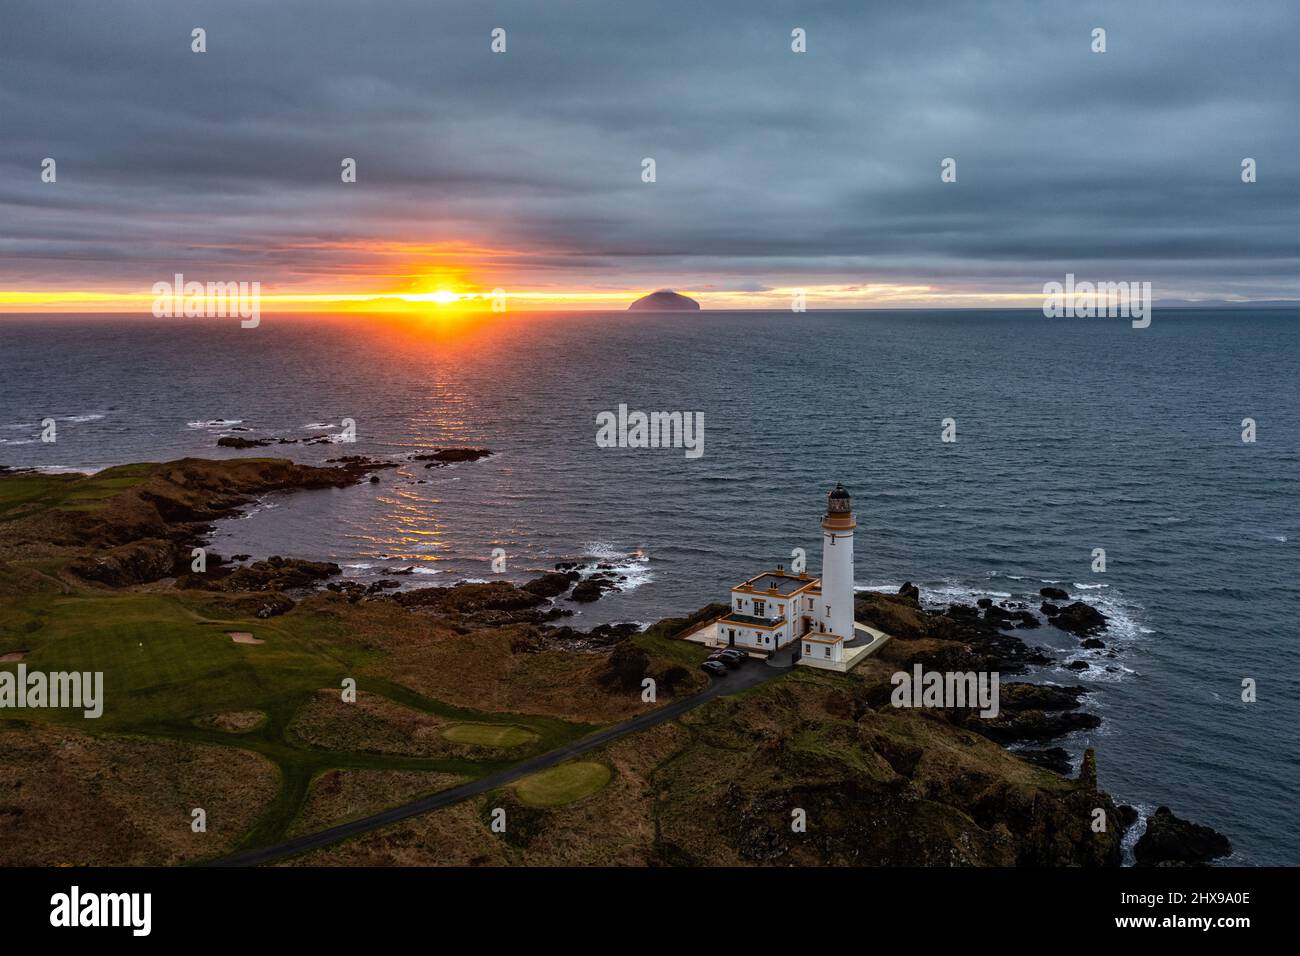 Turnberry Lighthouse, Turnberry, Ayrshire, Scotland, UK Stock Photo